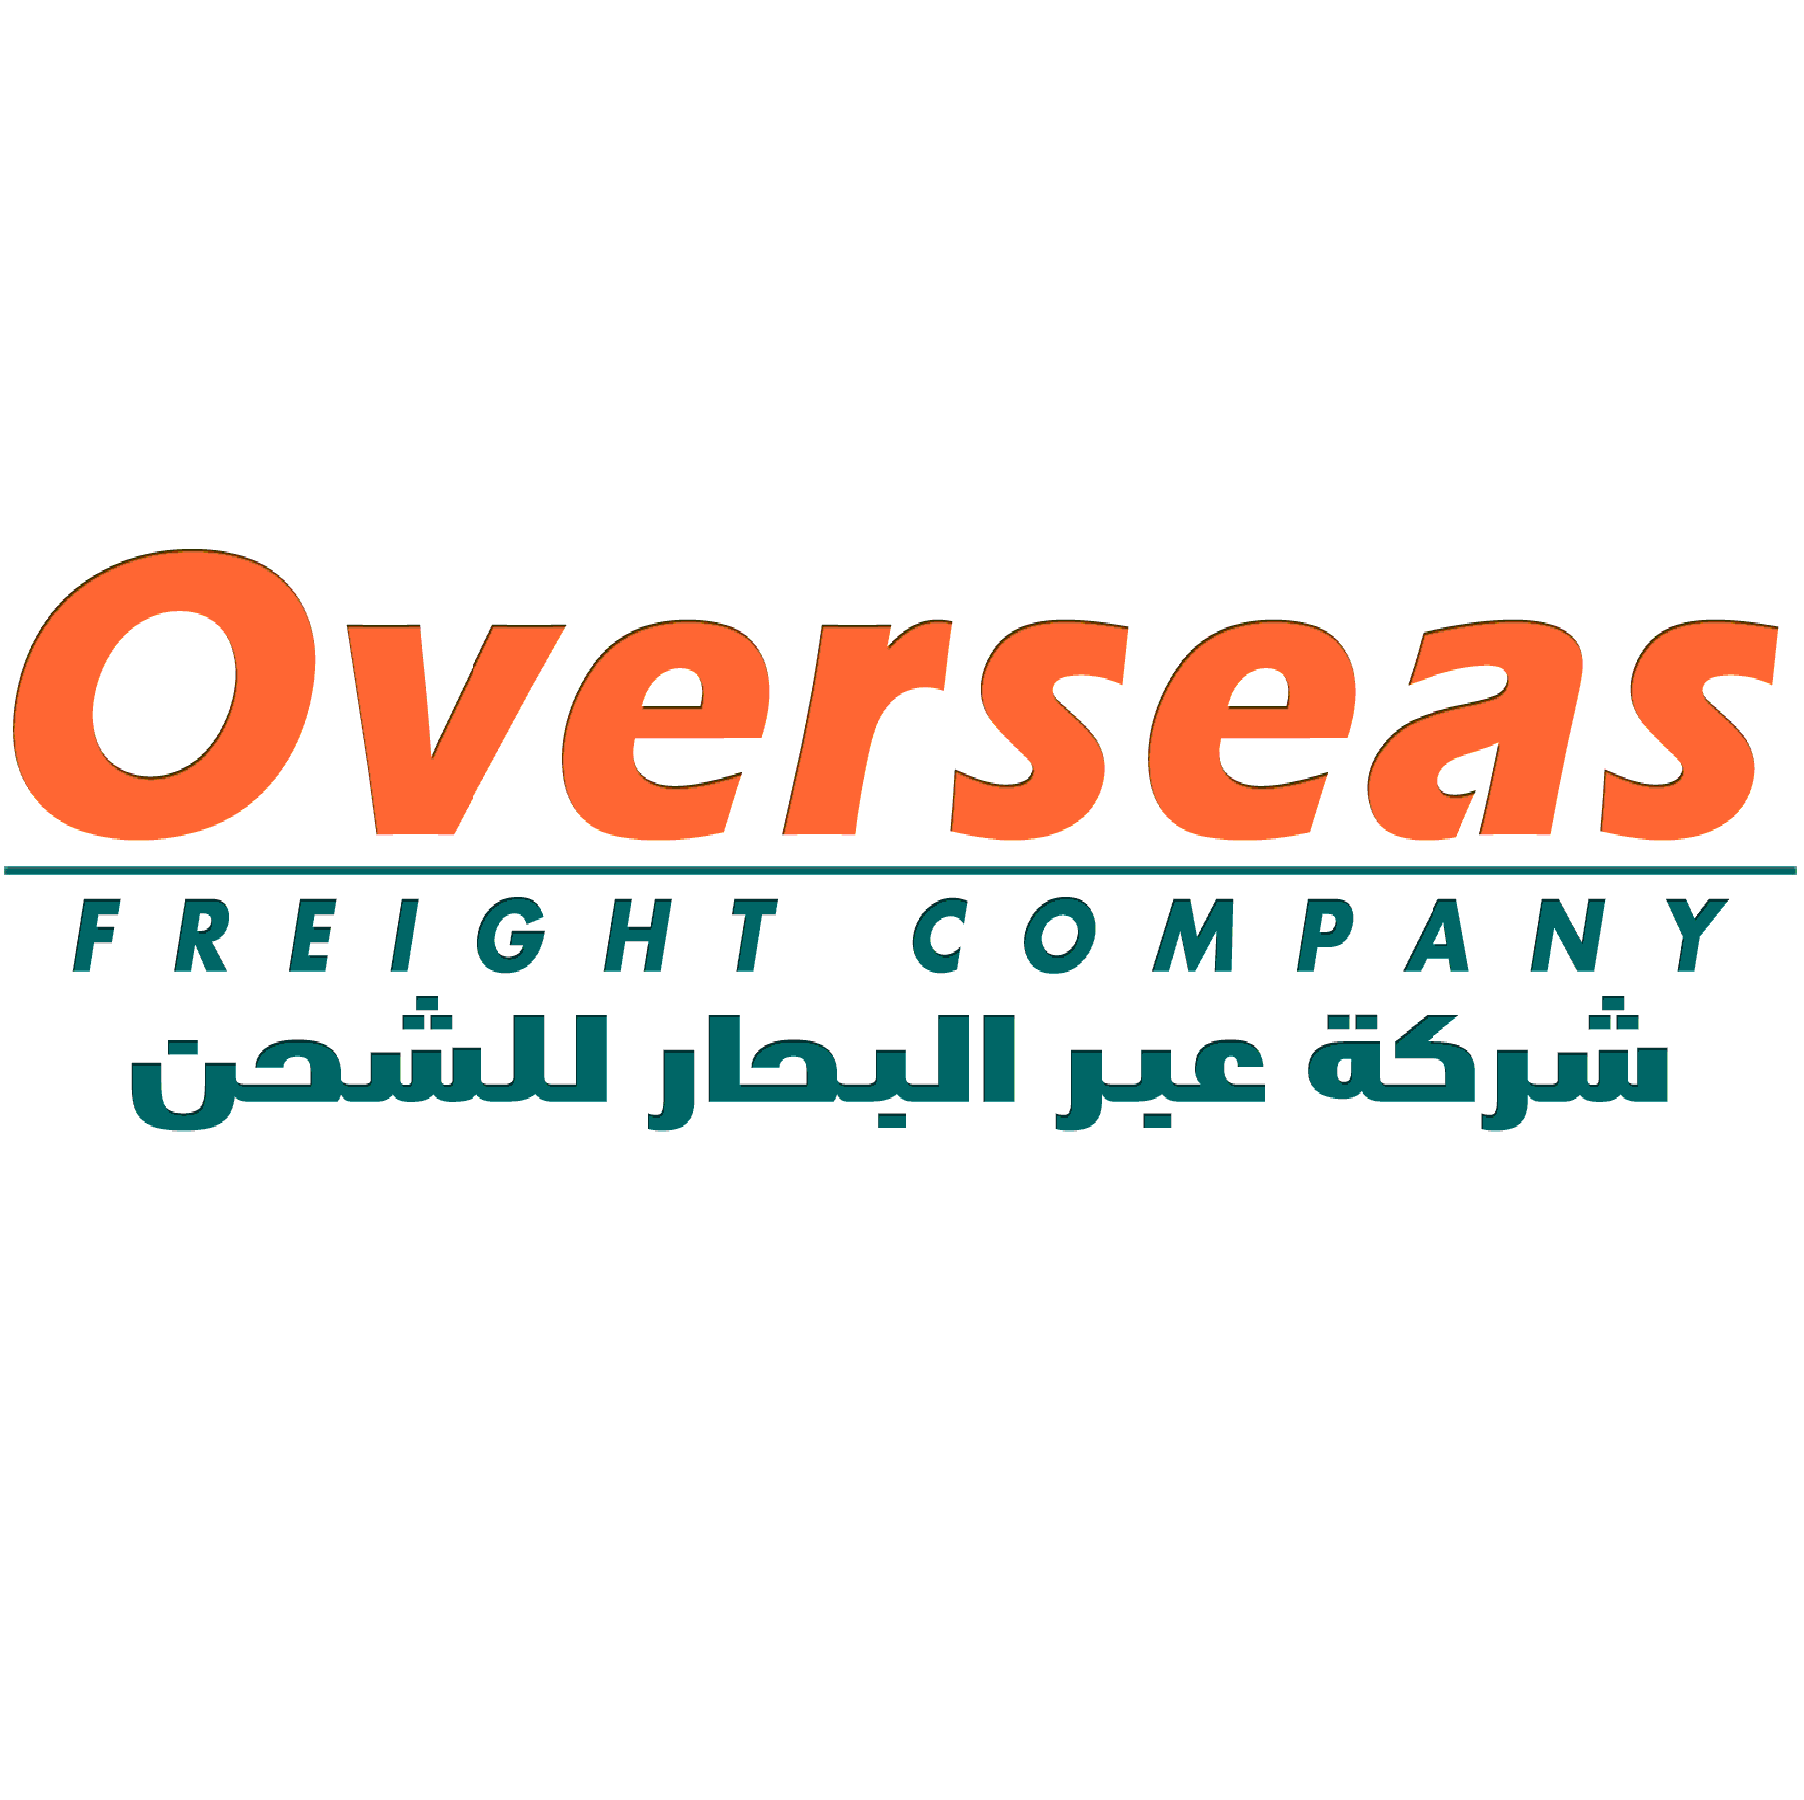 Overseas Freight